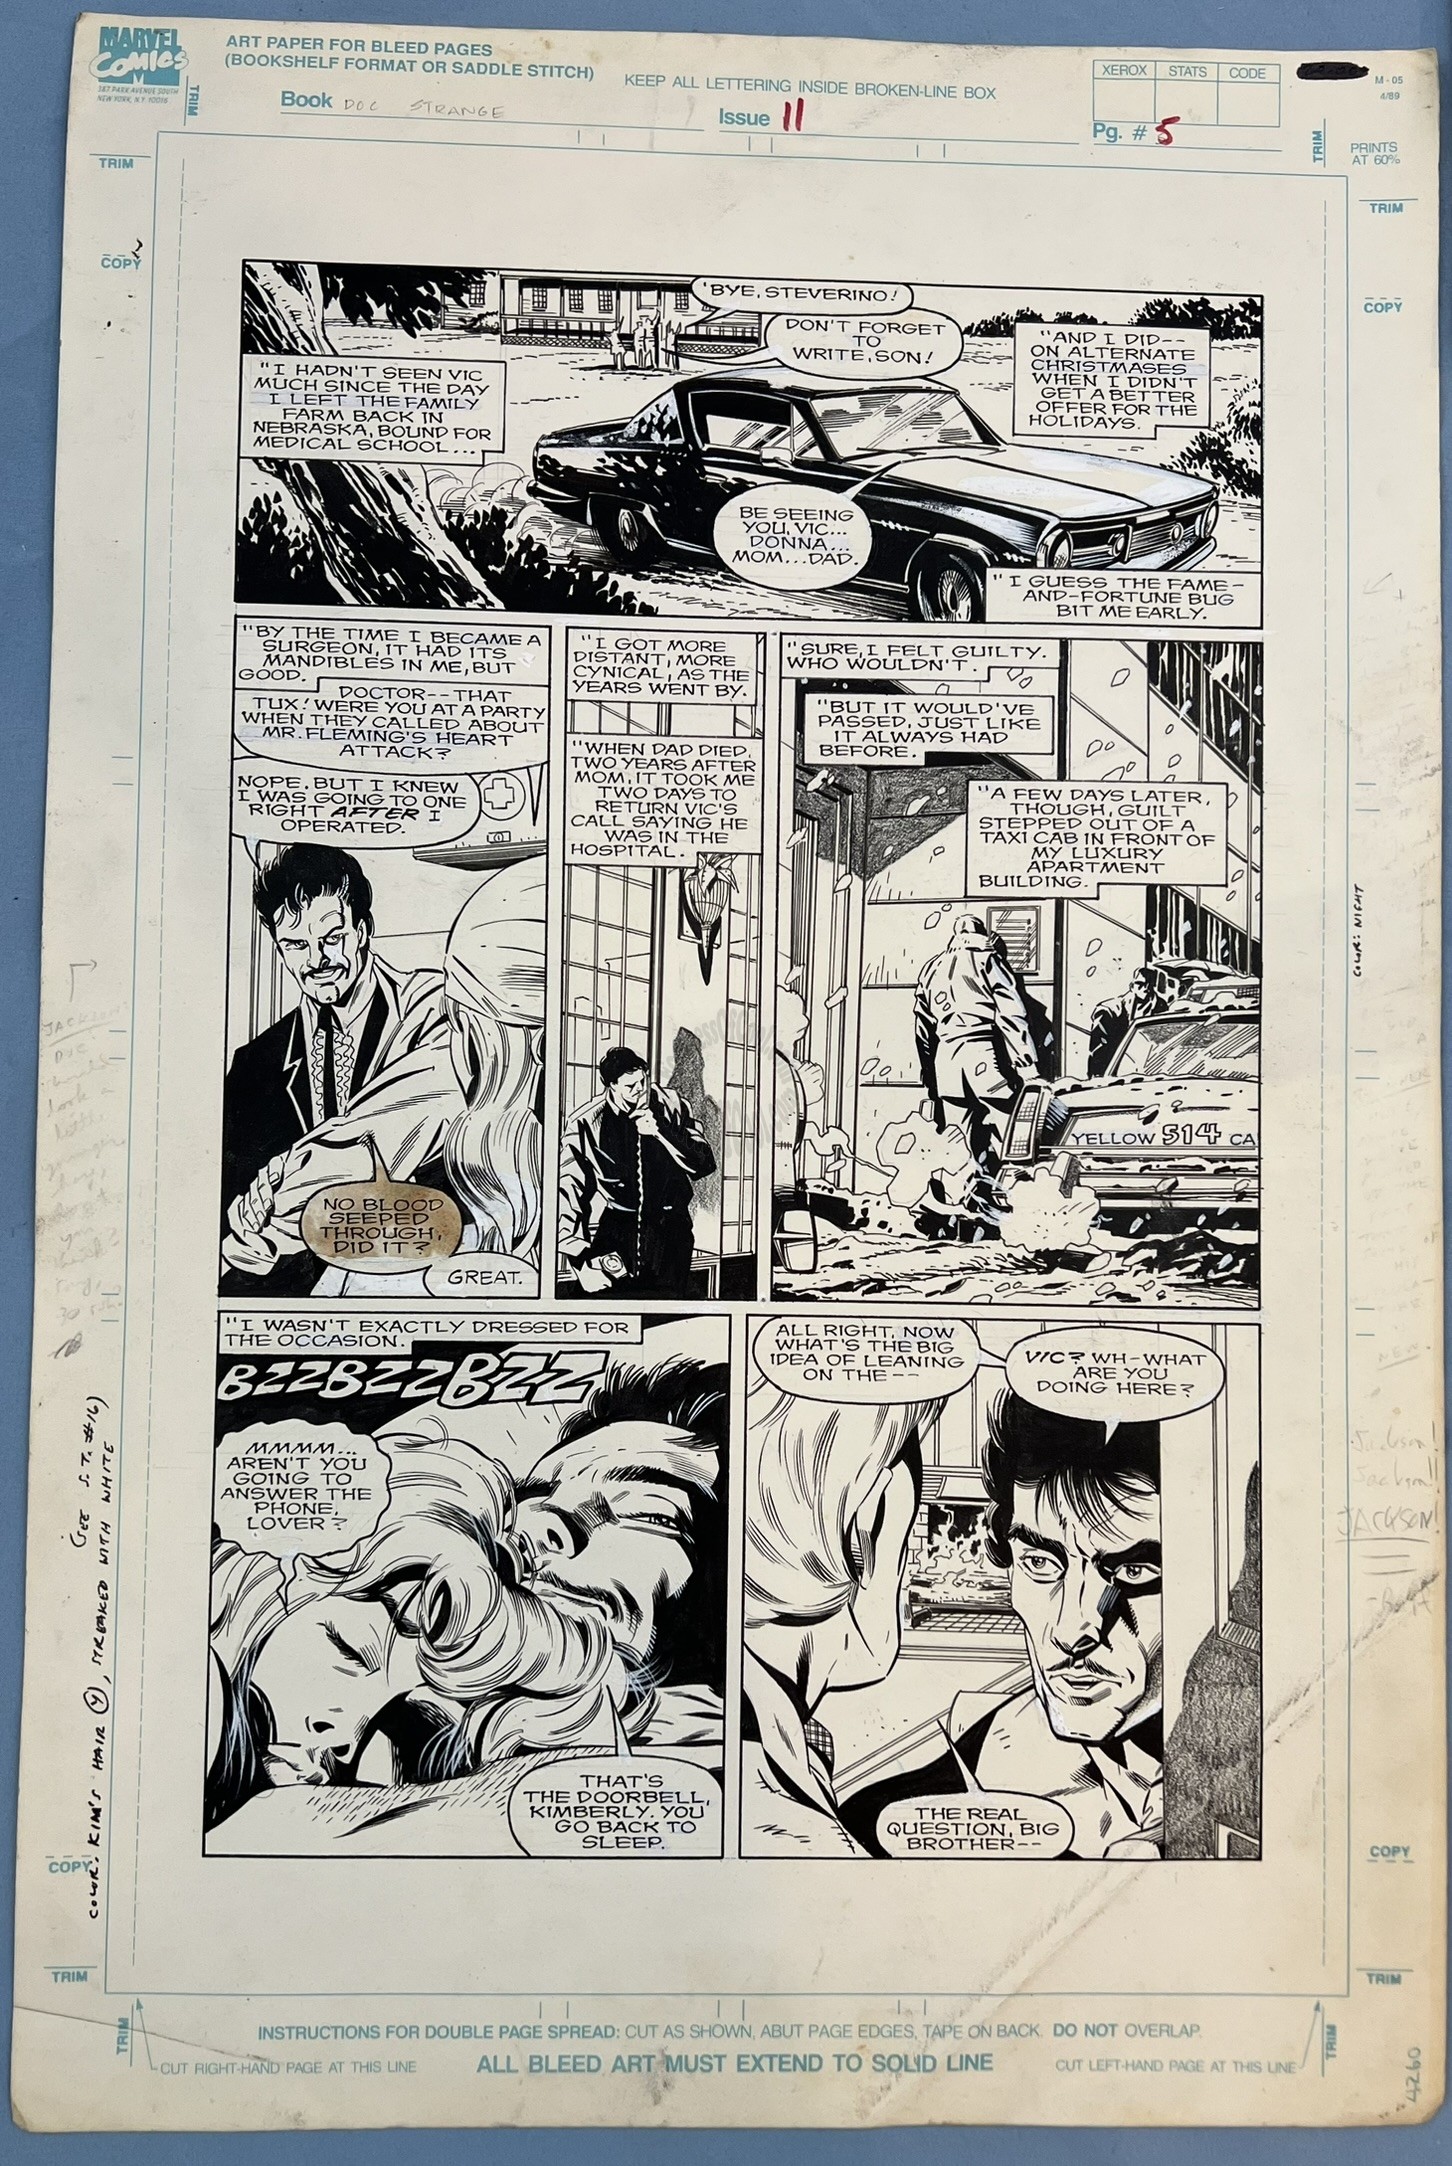 Doctor Strange Sorcerer Supreme #11 Page 5 Original Art - JACKSON "BUTCH" GUICE